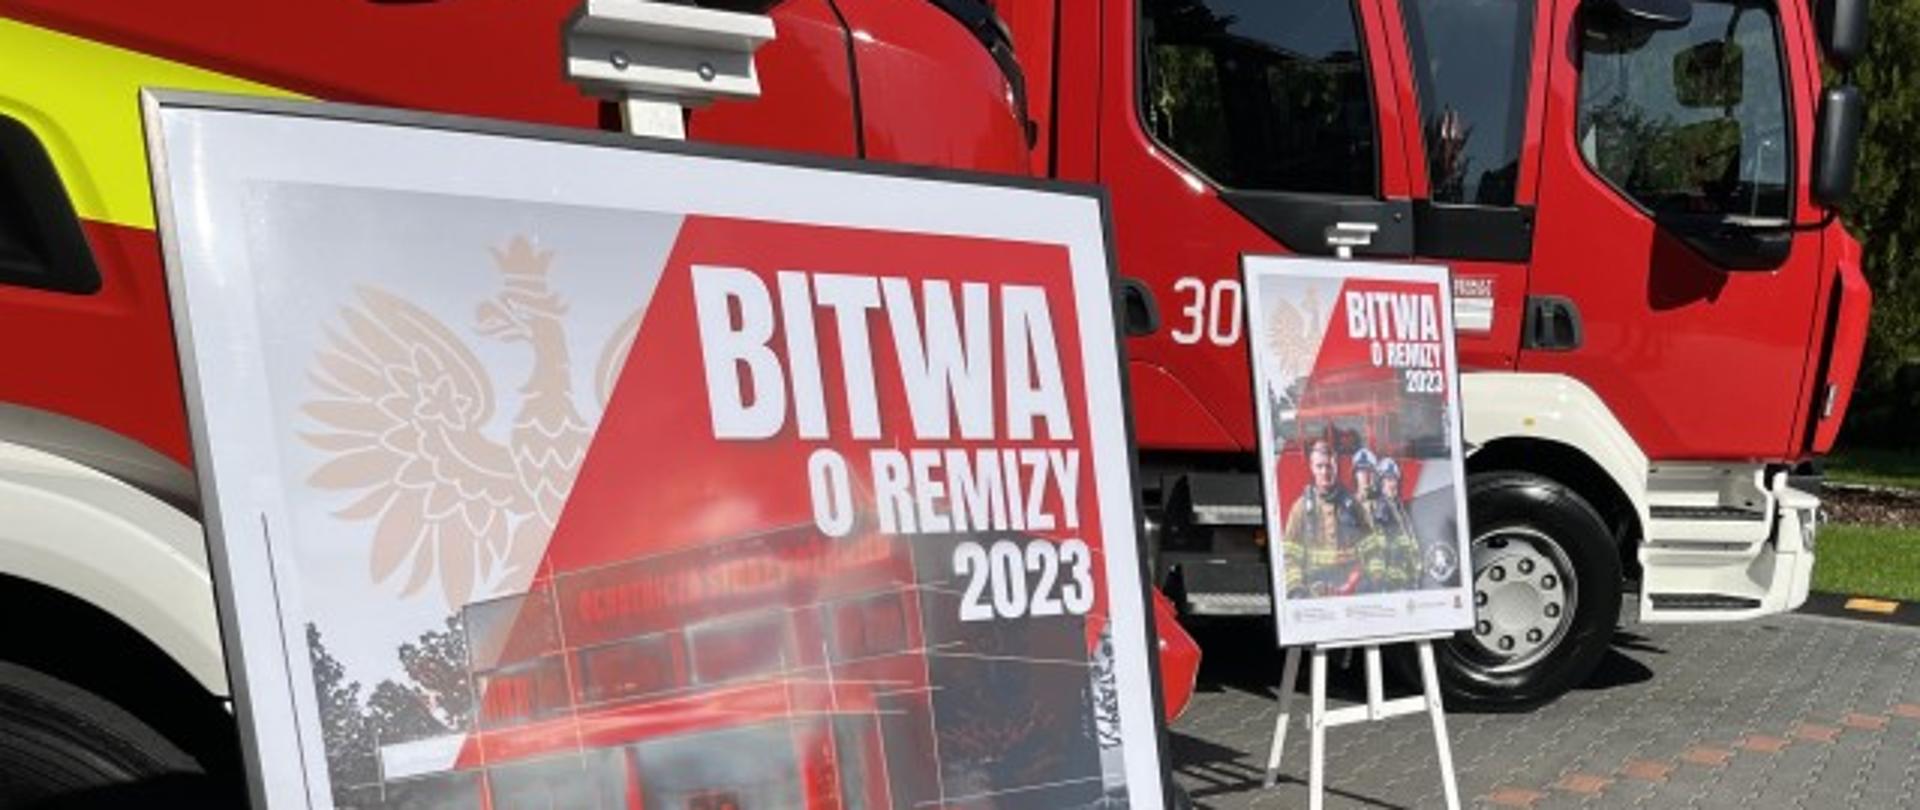 Plakat "BITWA O REMIZY" 2023, w tle samochody gaśnicze